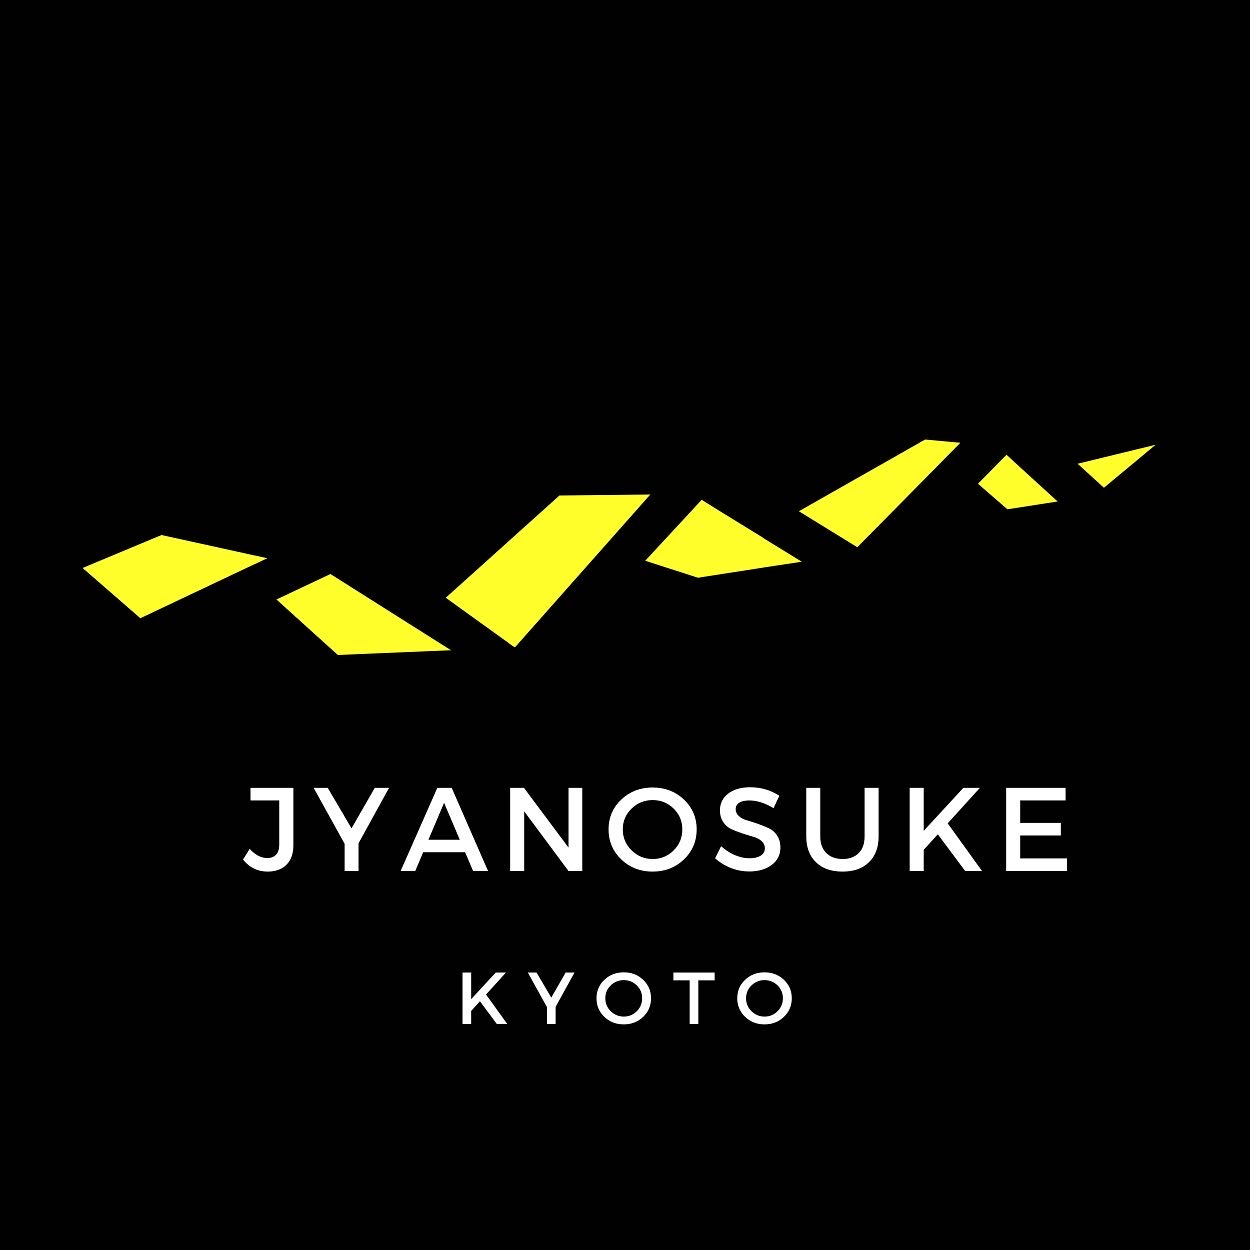 jyanosuke